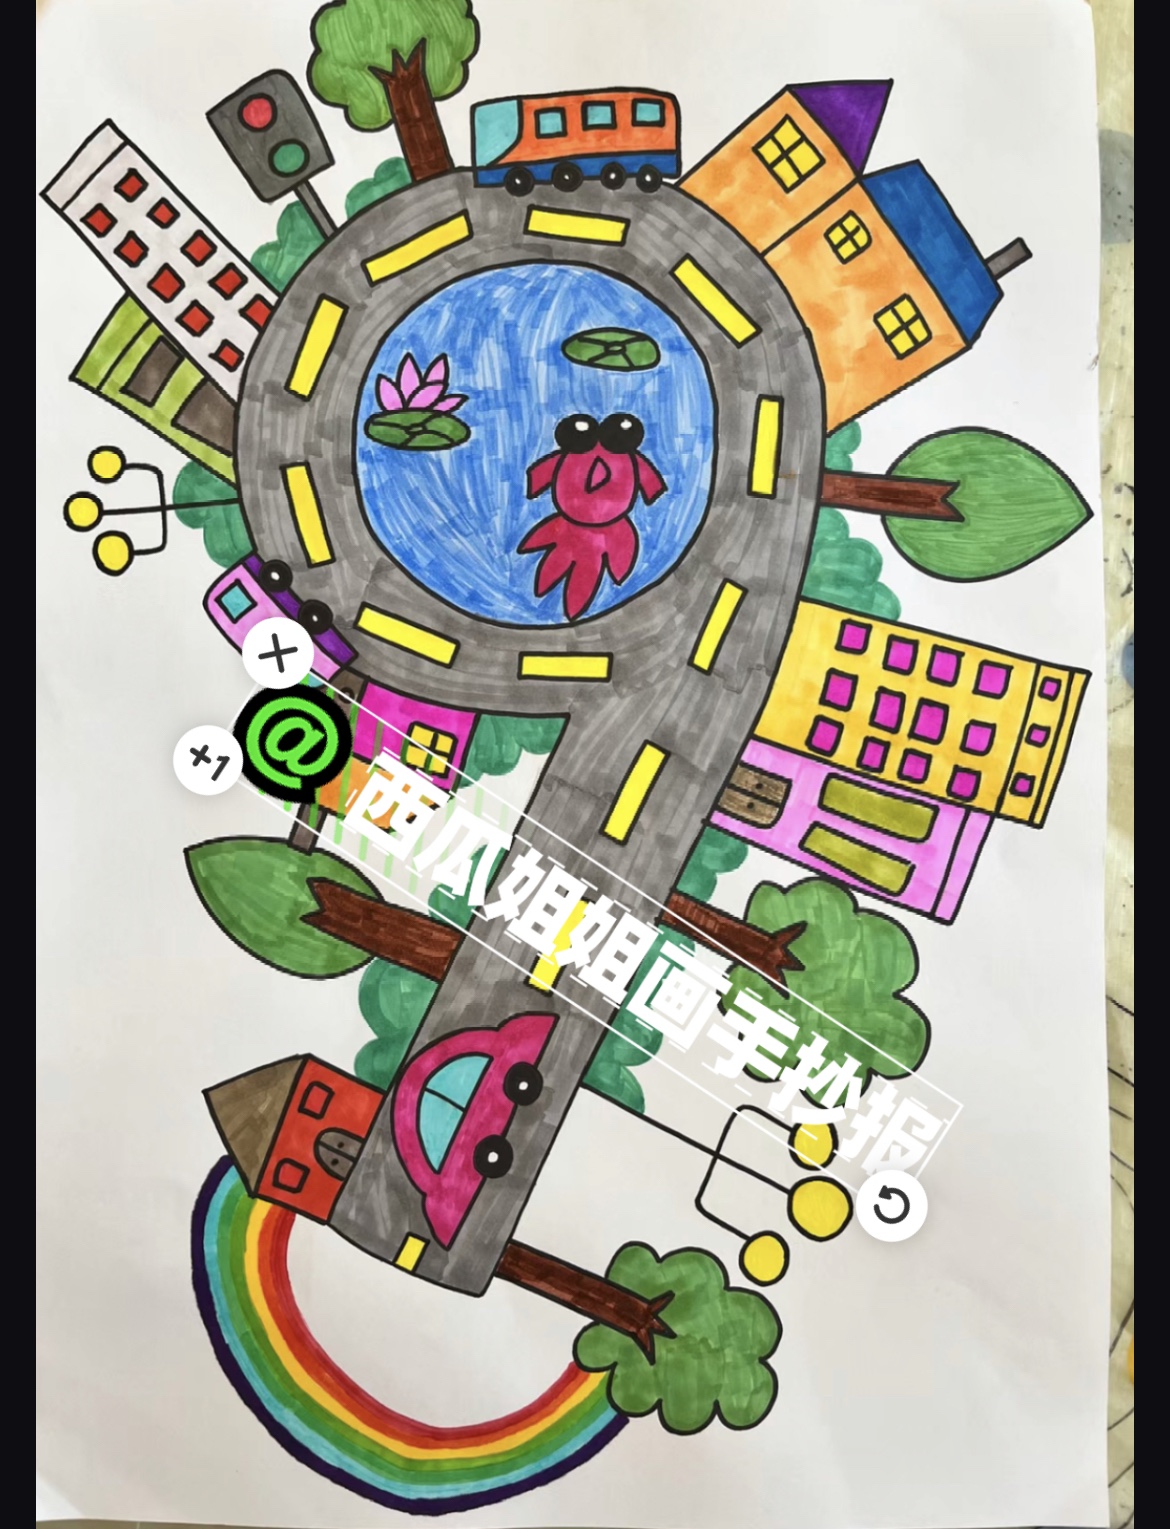 数字69创意画一年级手抄报模板电子版儿童线稿小学生简笔画主题画